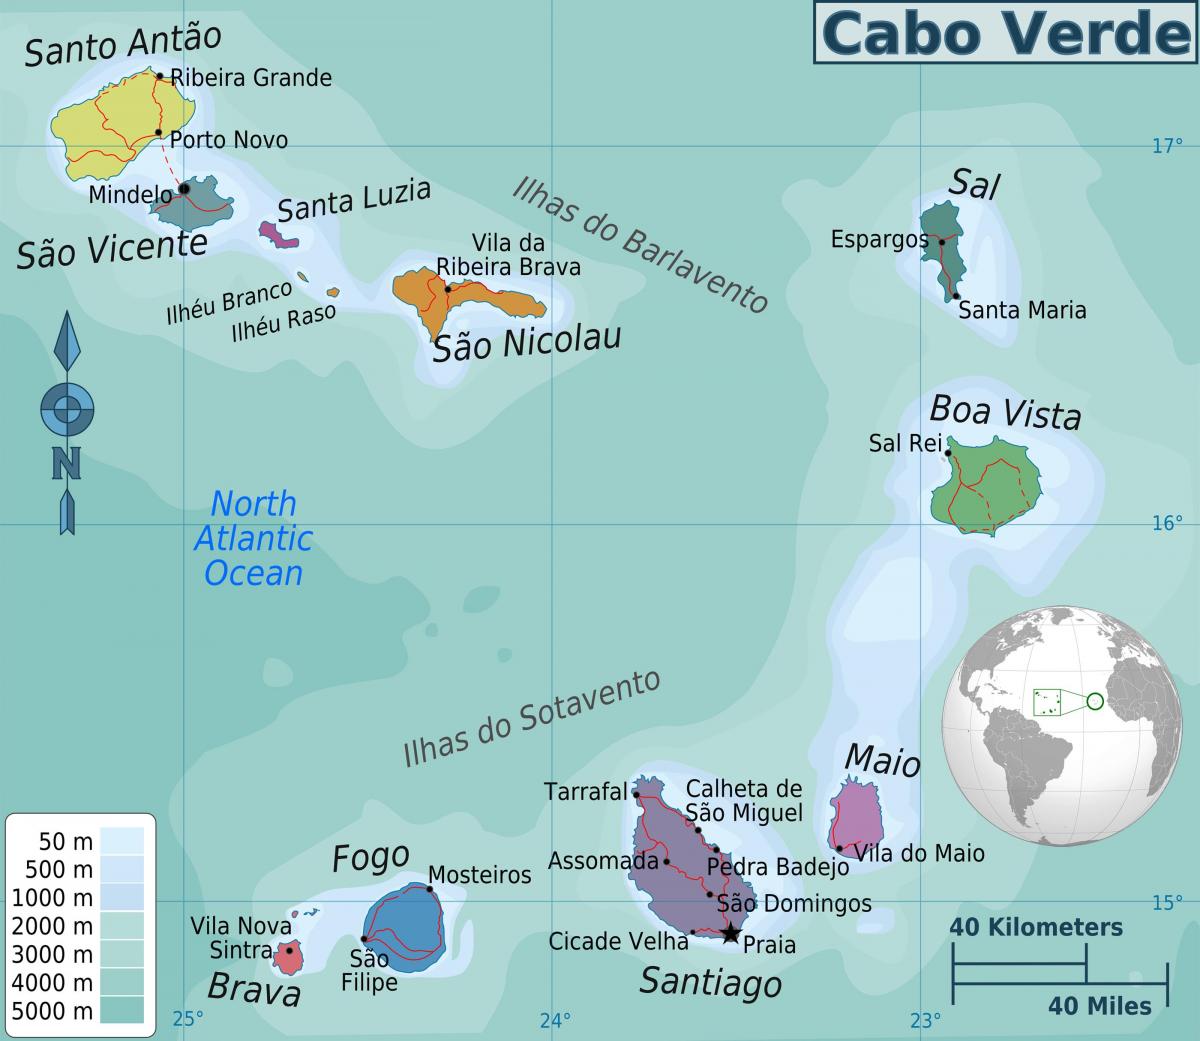 Cabo Verde en el mapa